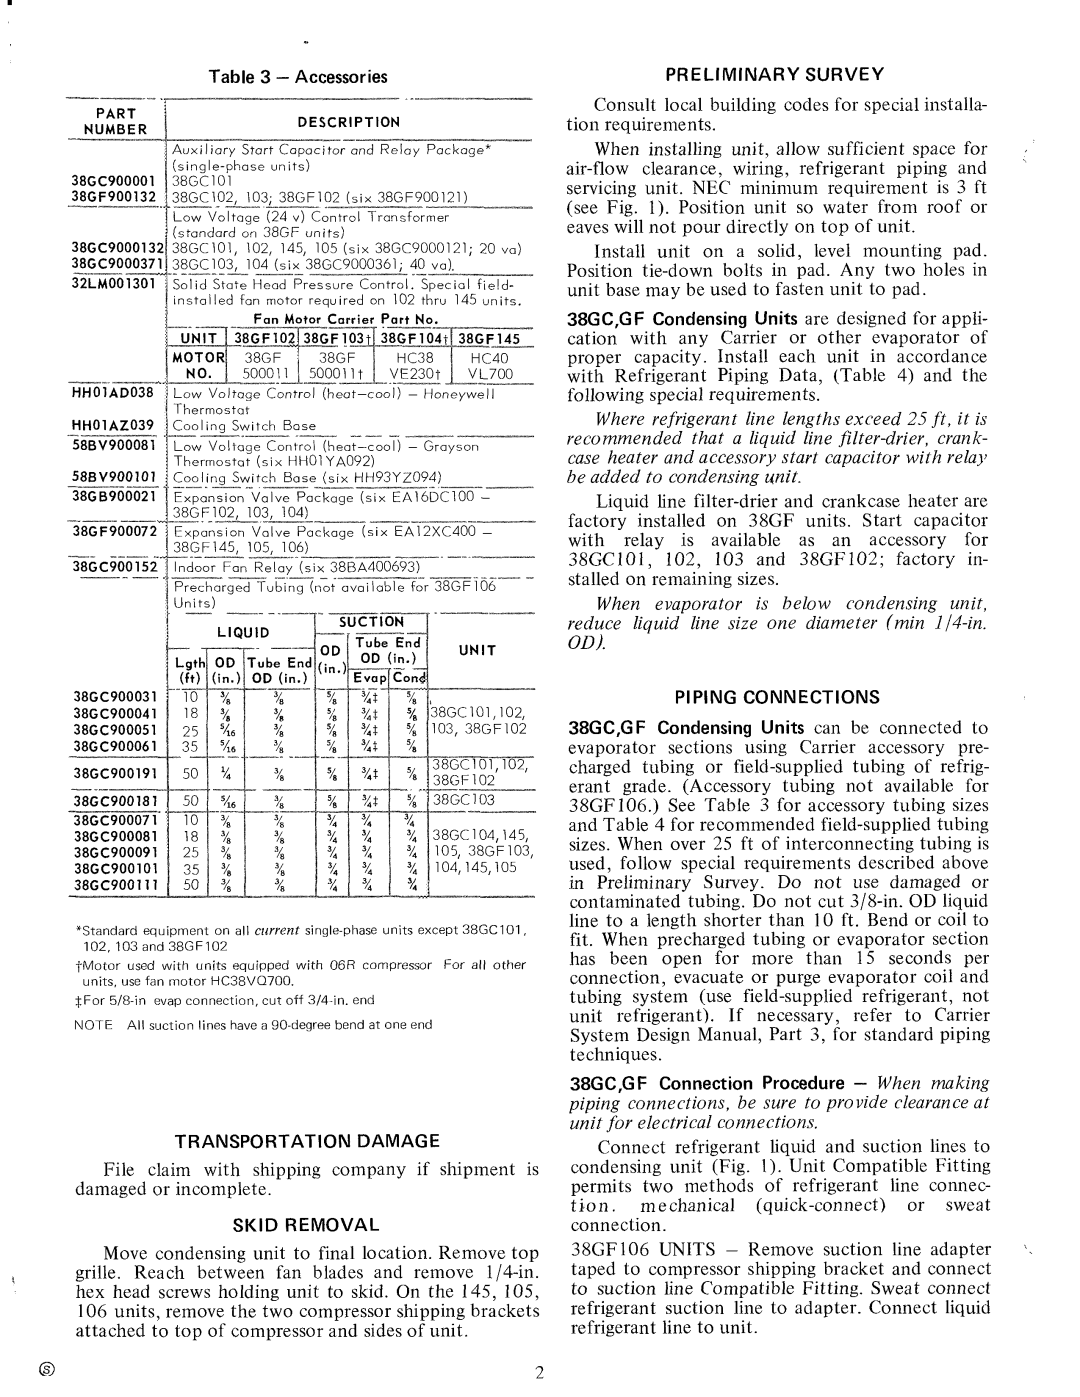 Carrier 38GF, 38GC manual 